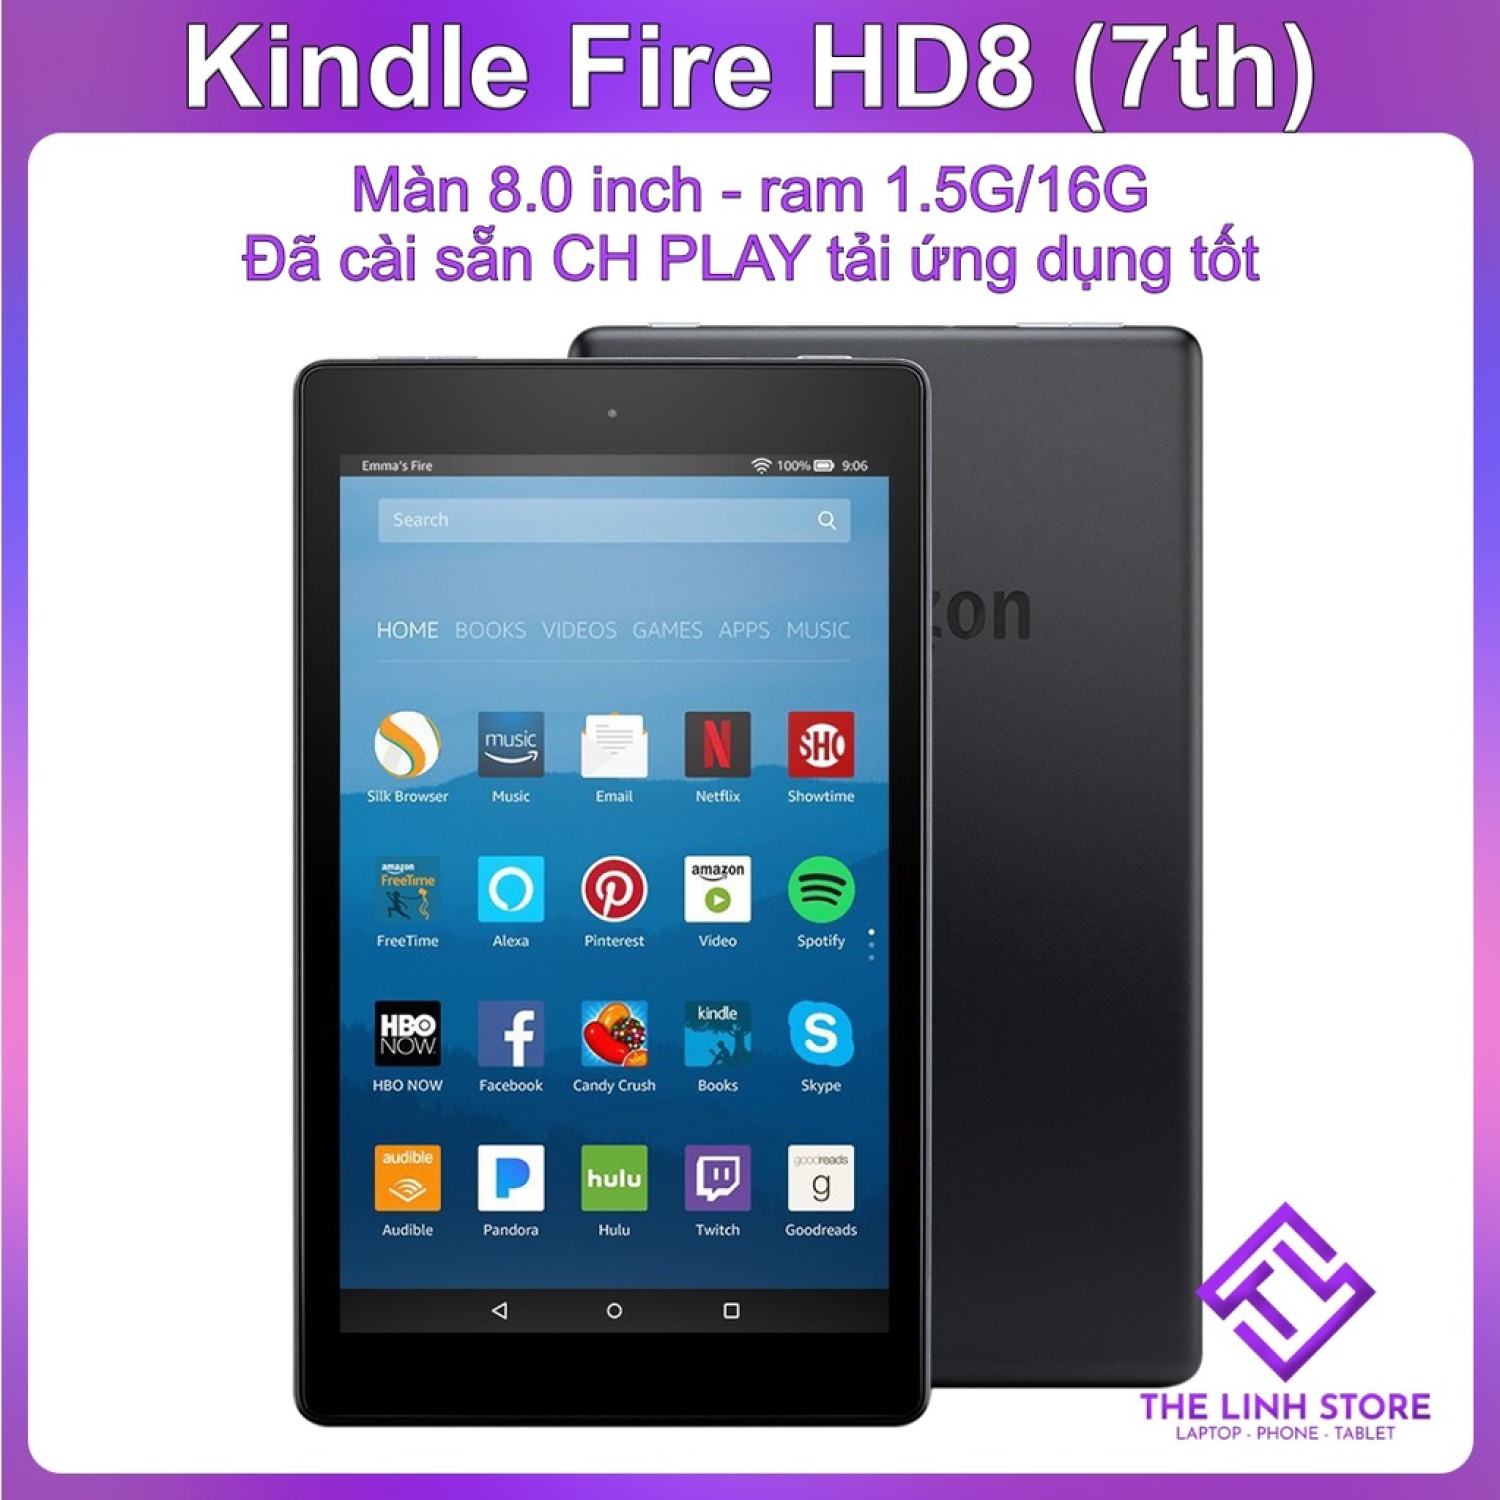 Máy tính bảng Amazon Kindle Fire HD8 7th thế hệ 7 - Đã cài sẵn CH PLAY